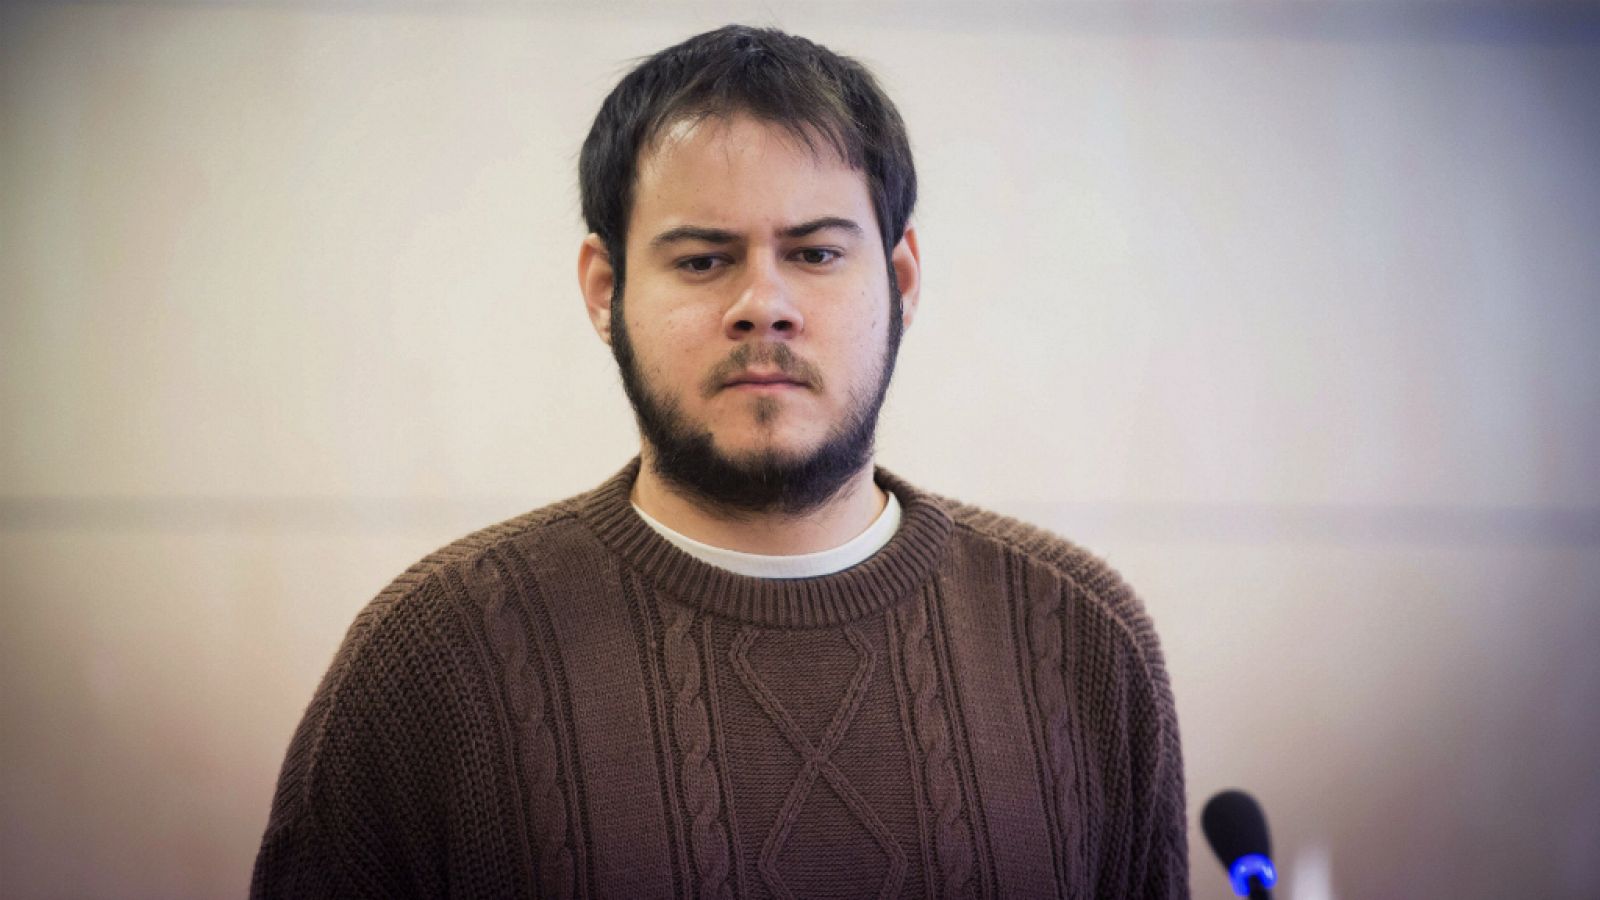 24 horas - Pablo Hasel condenado a dos años de cárcel por enaltecimiento del terrorismo - Escuchar ahora